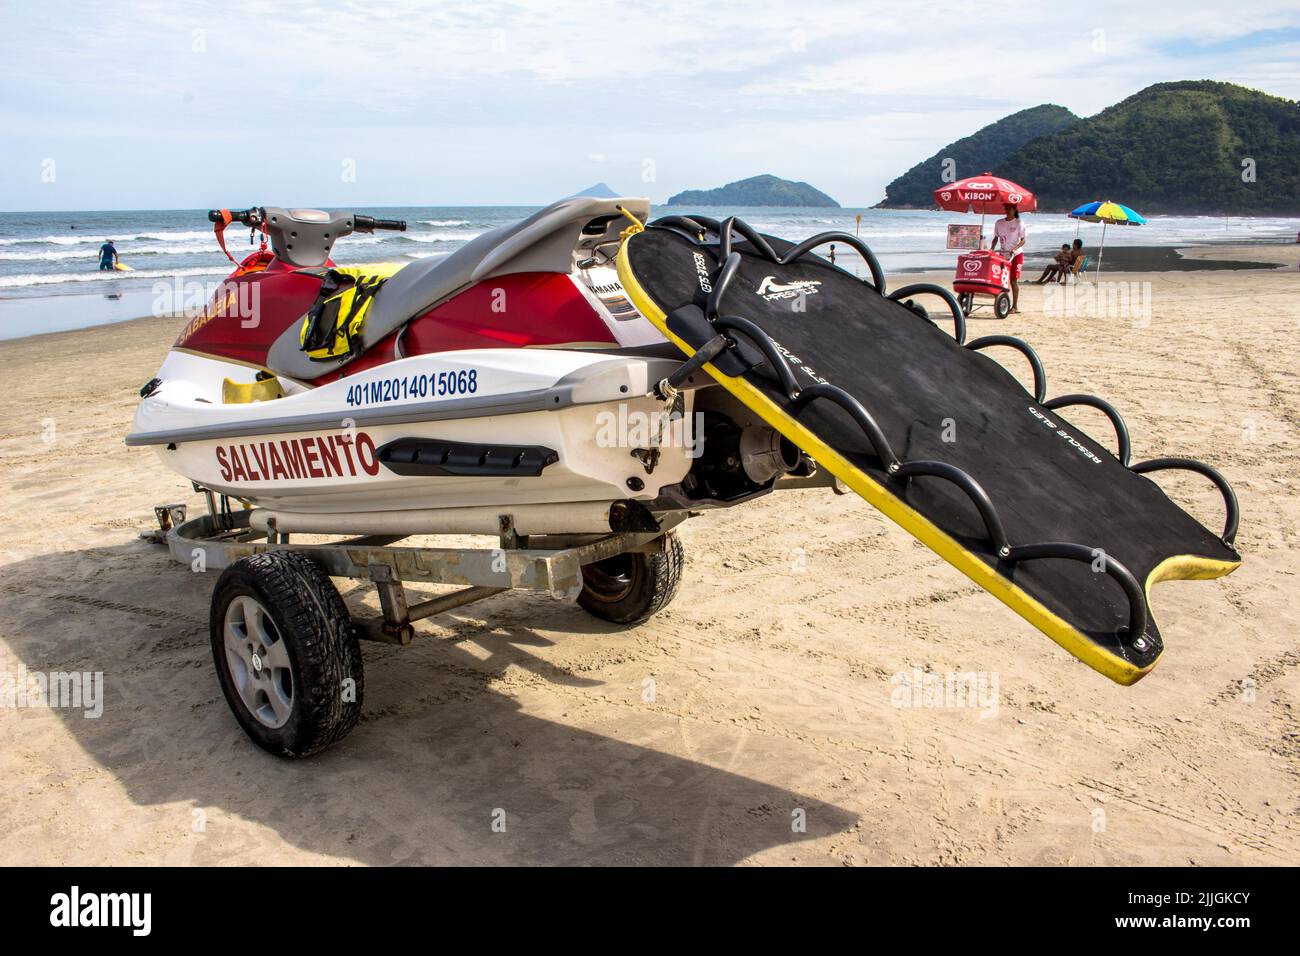 Sao Sebastiao, Sao Paulo, Brazil, May 15, 2015. Lifeguard rescue jet-ski stopped on the sands of Barra so Sahy beach in Sao Sebastiao, north coast of Stock Photo